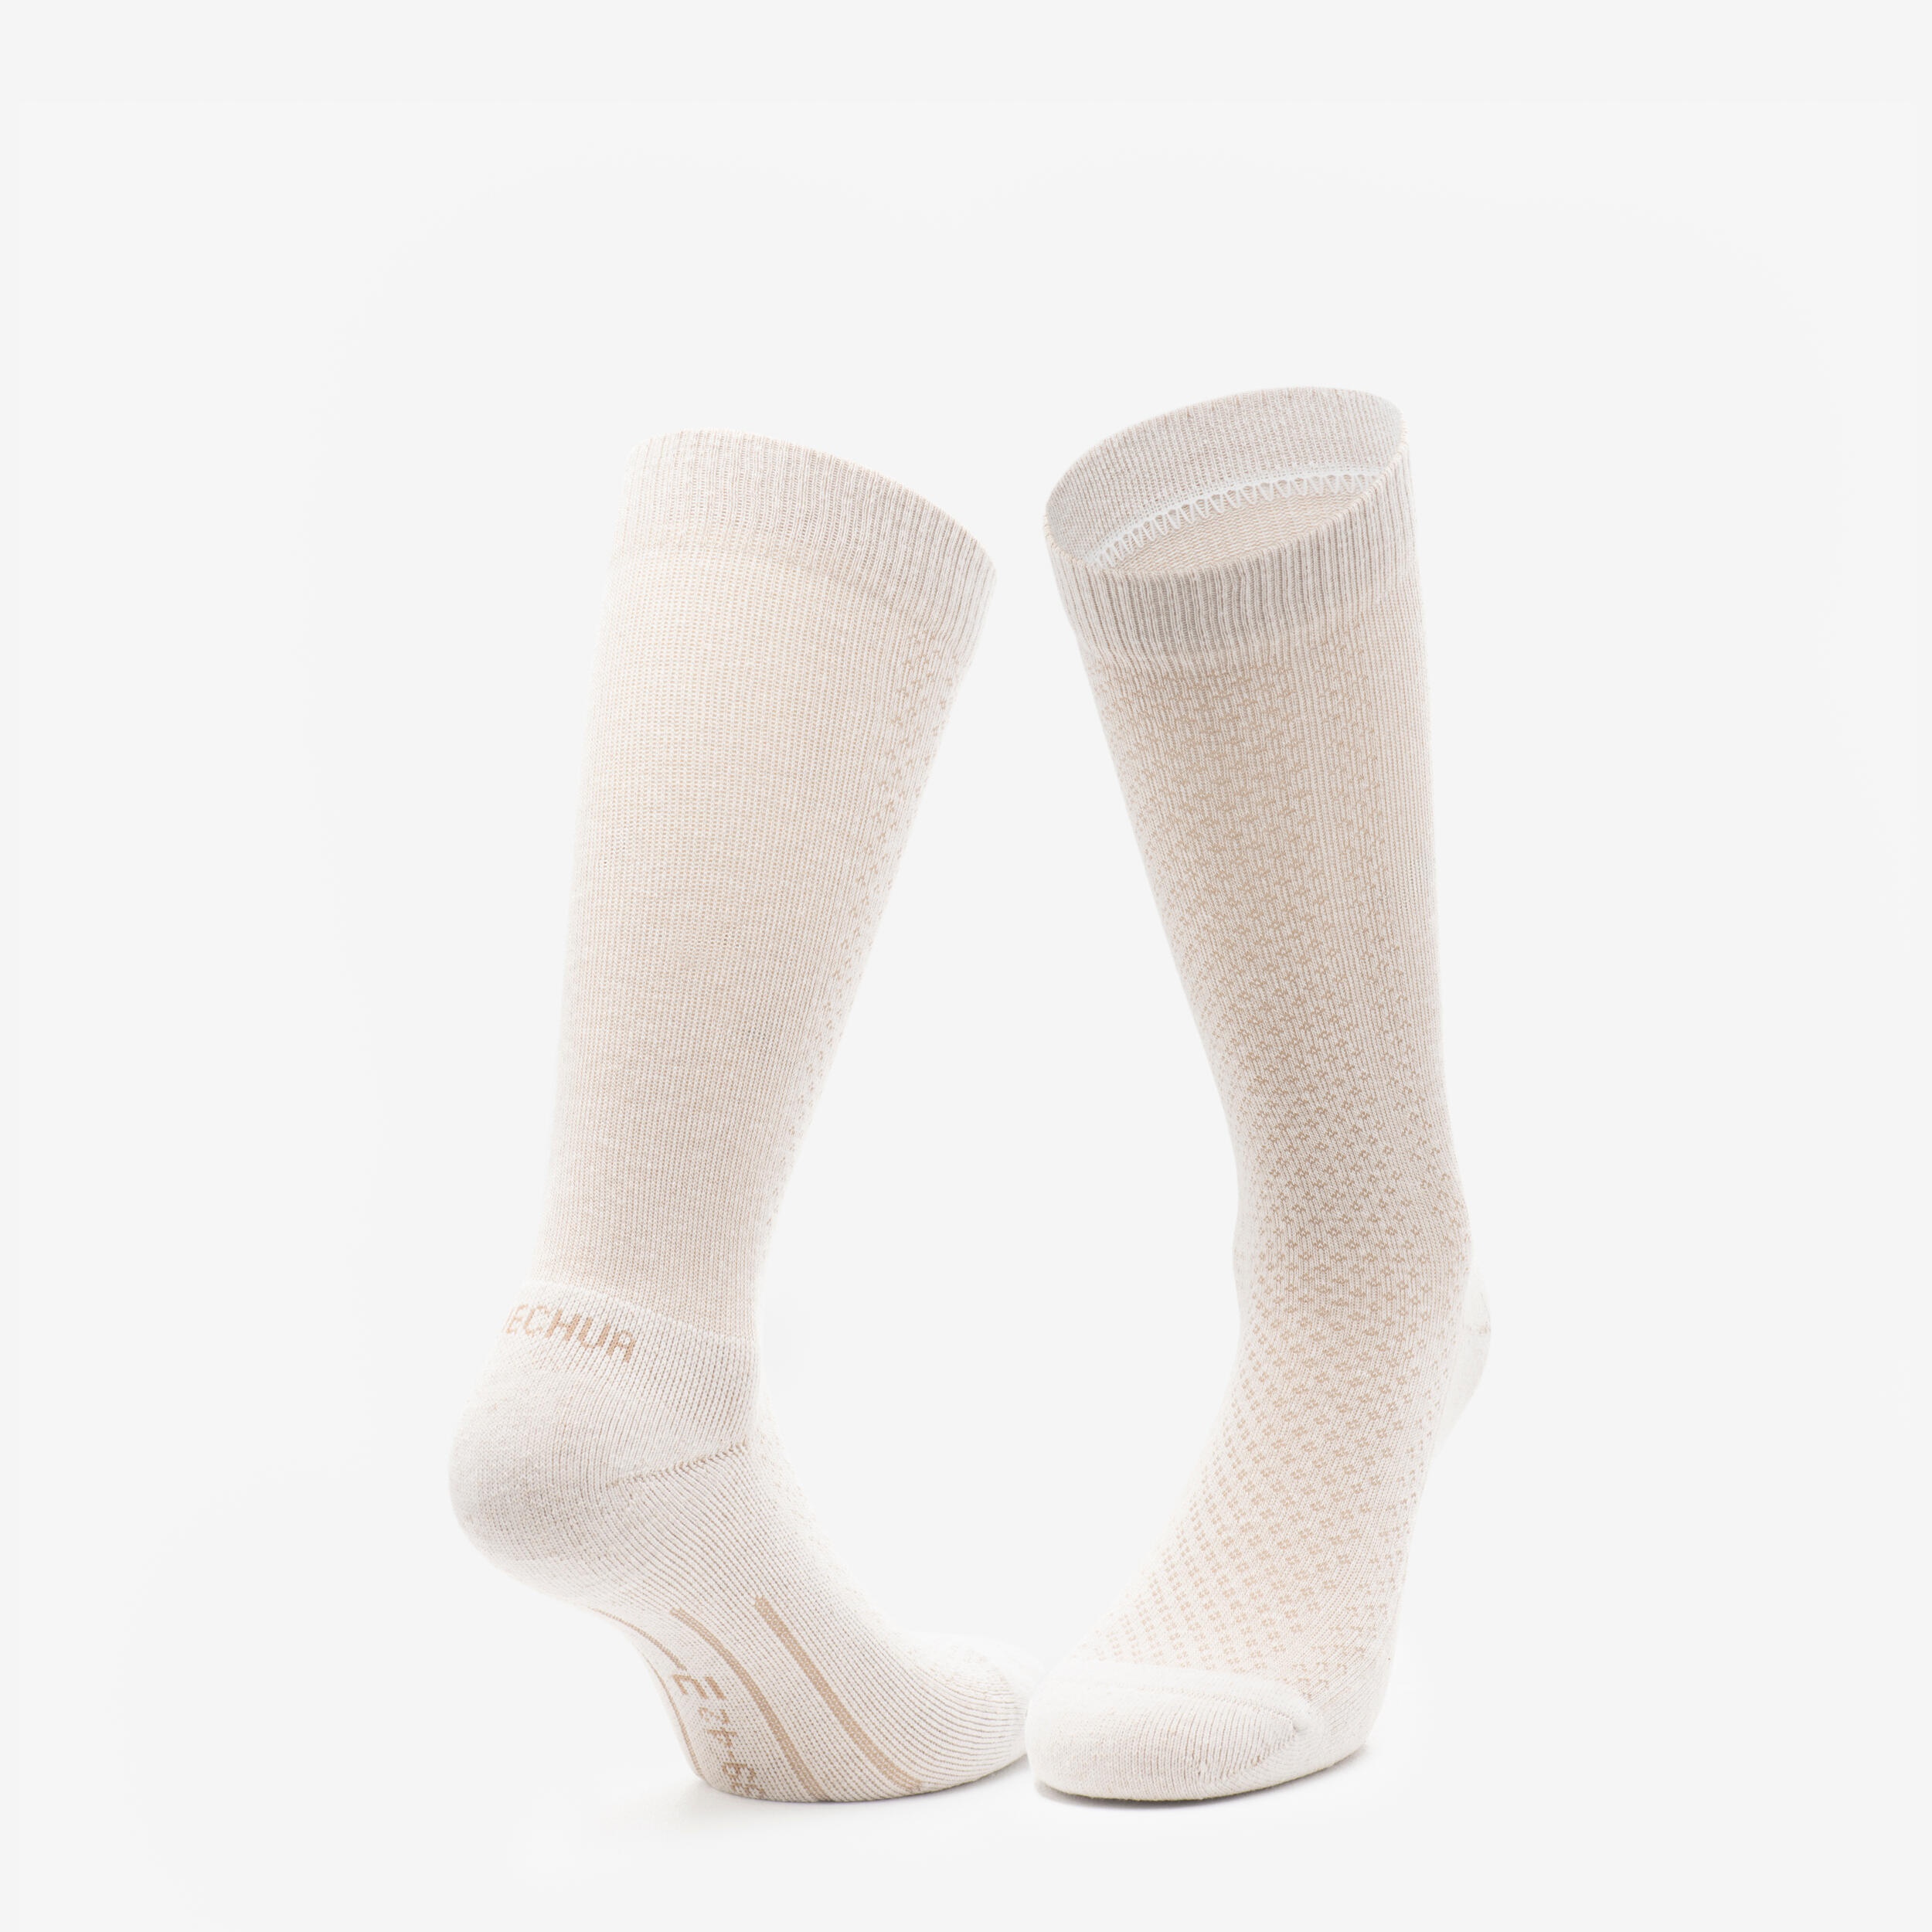 Hike 100 High Socks  - Beige Burgundy-Lyocell& Linen-Pack of 2 pairs 3/11